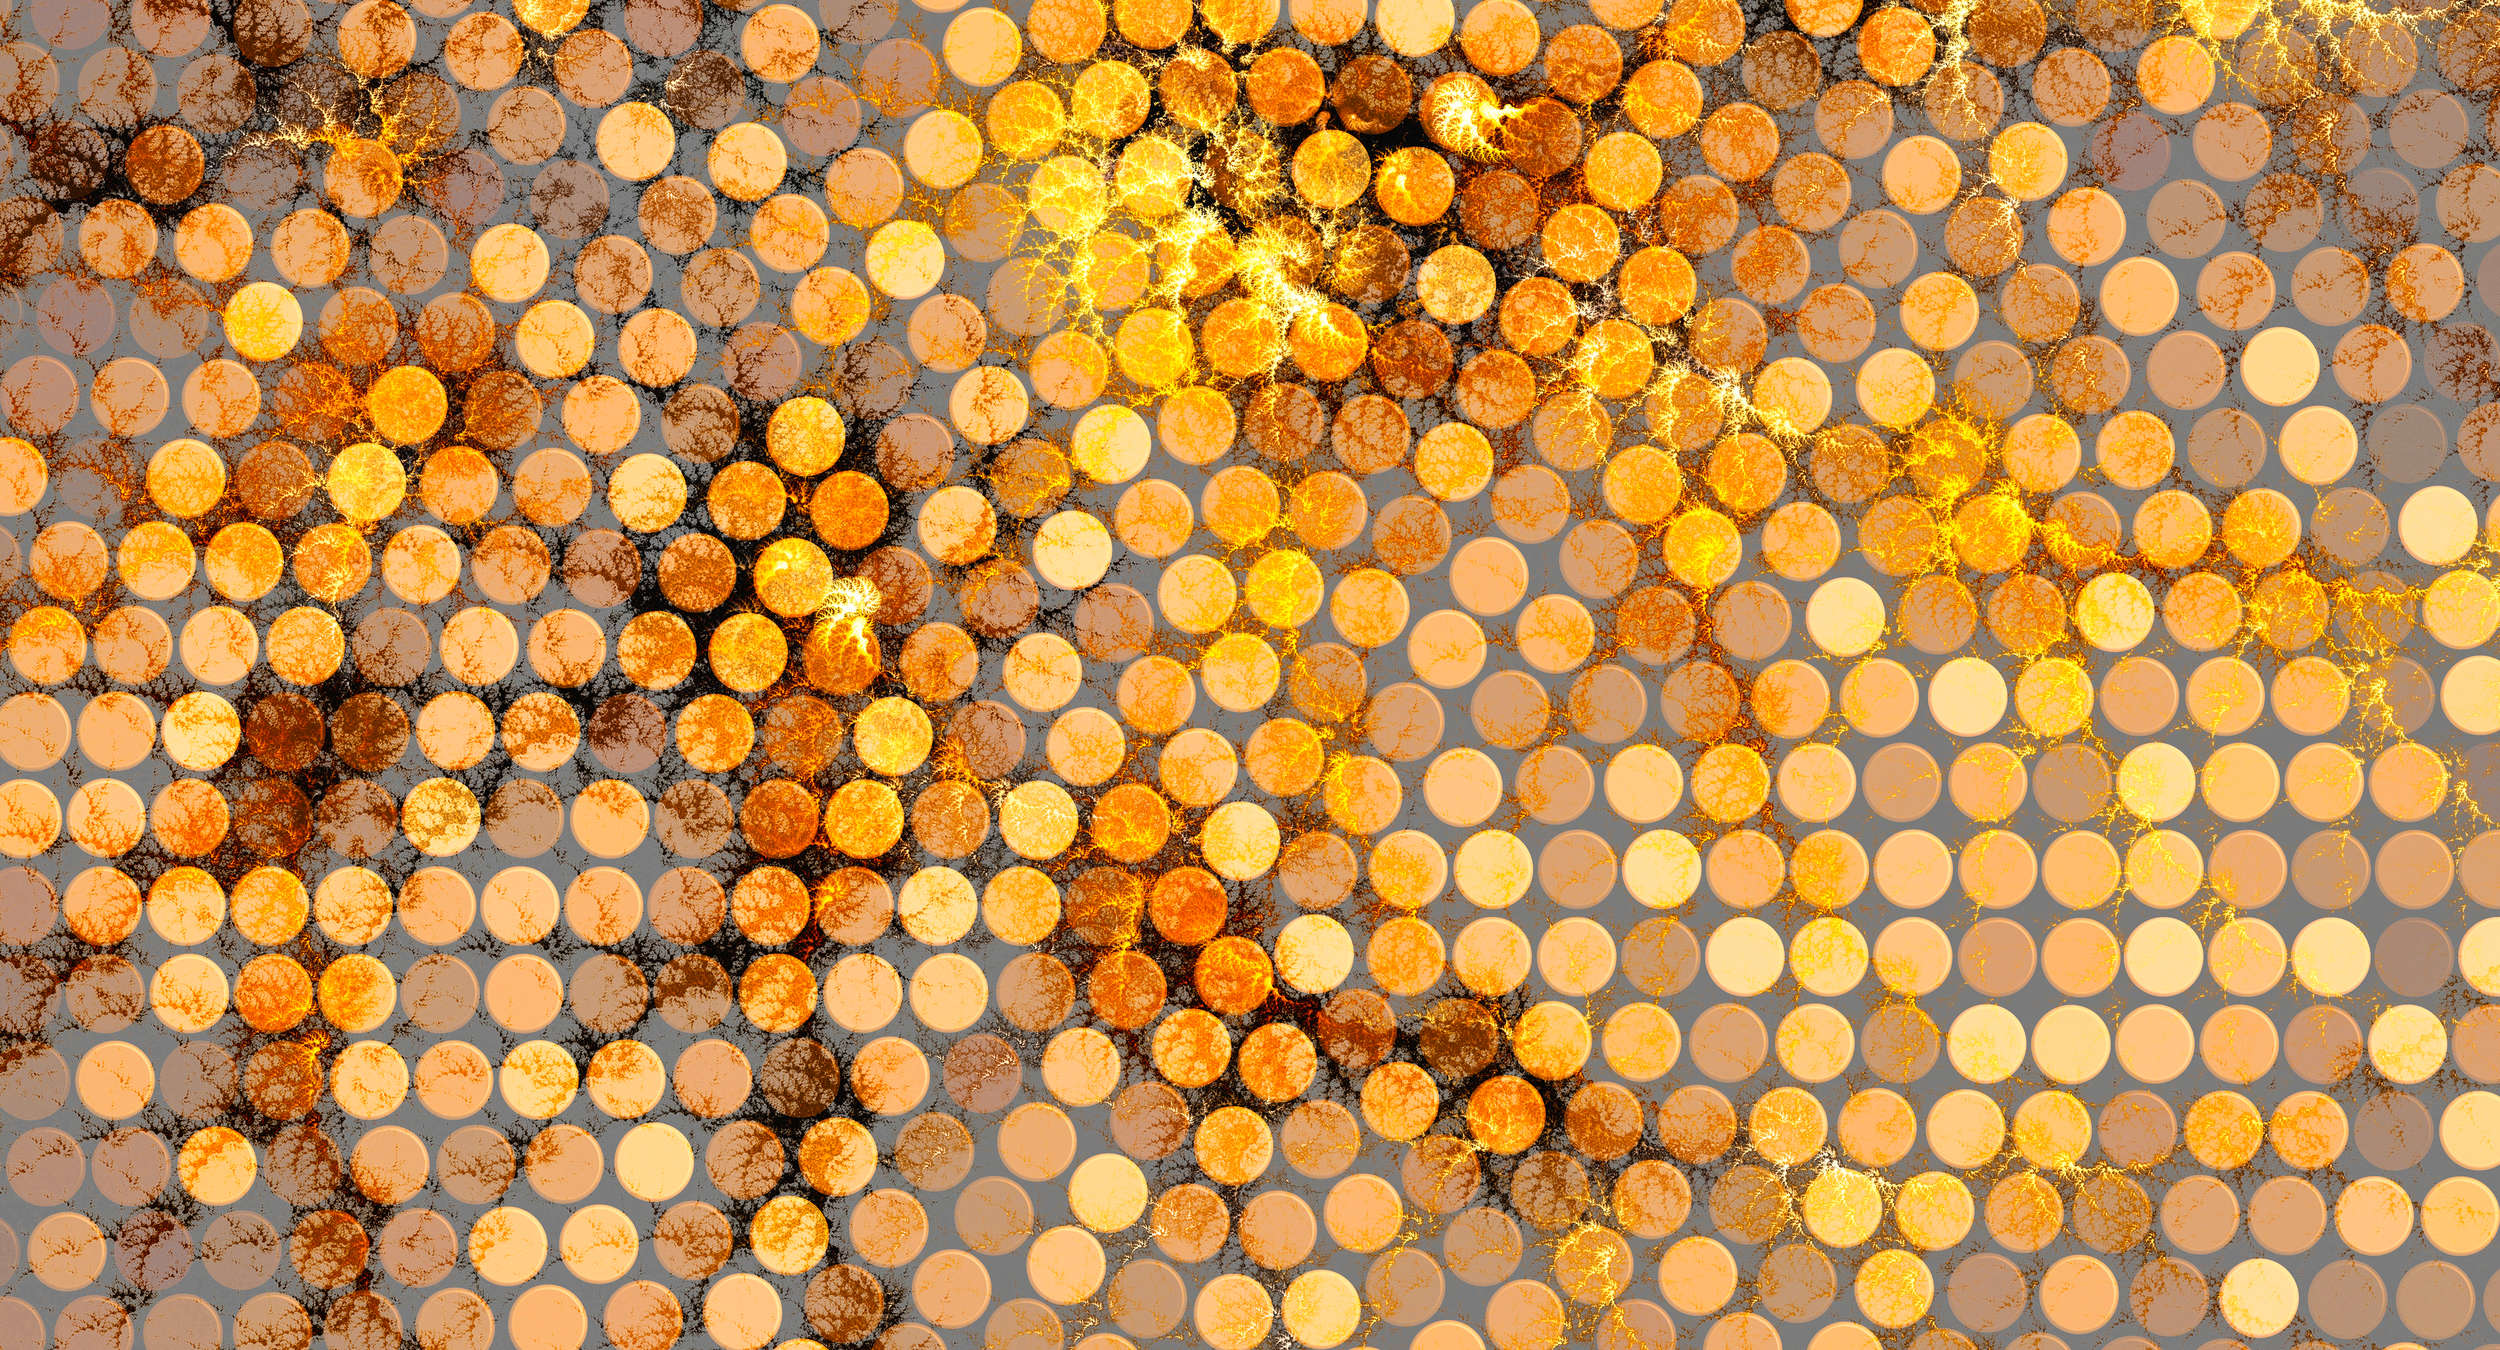             Papel pintado gráfico con textura y diseño de puntos - naranja, amarillo, marrón
        